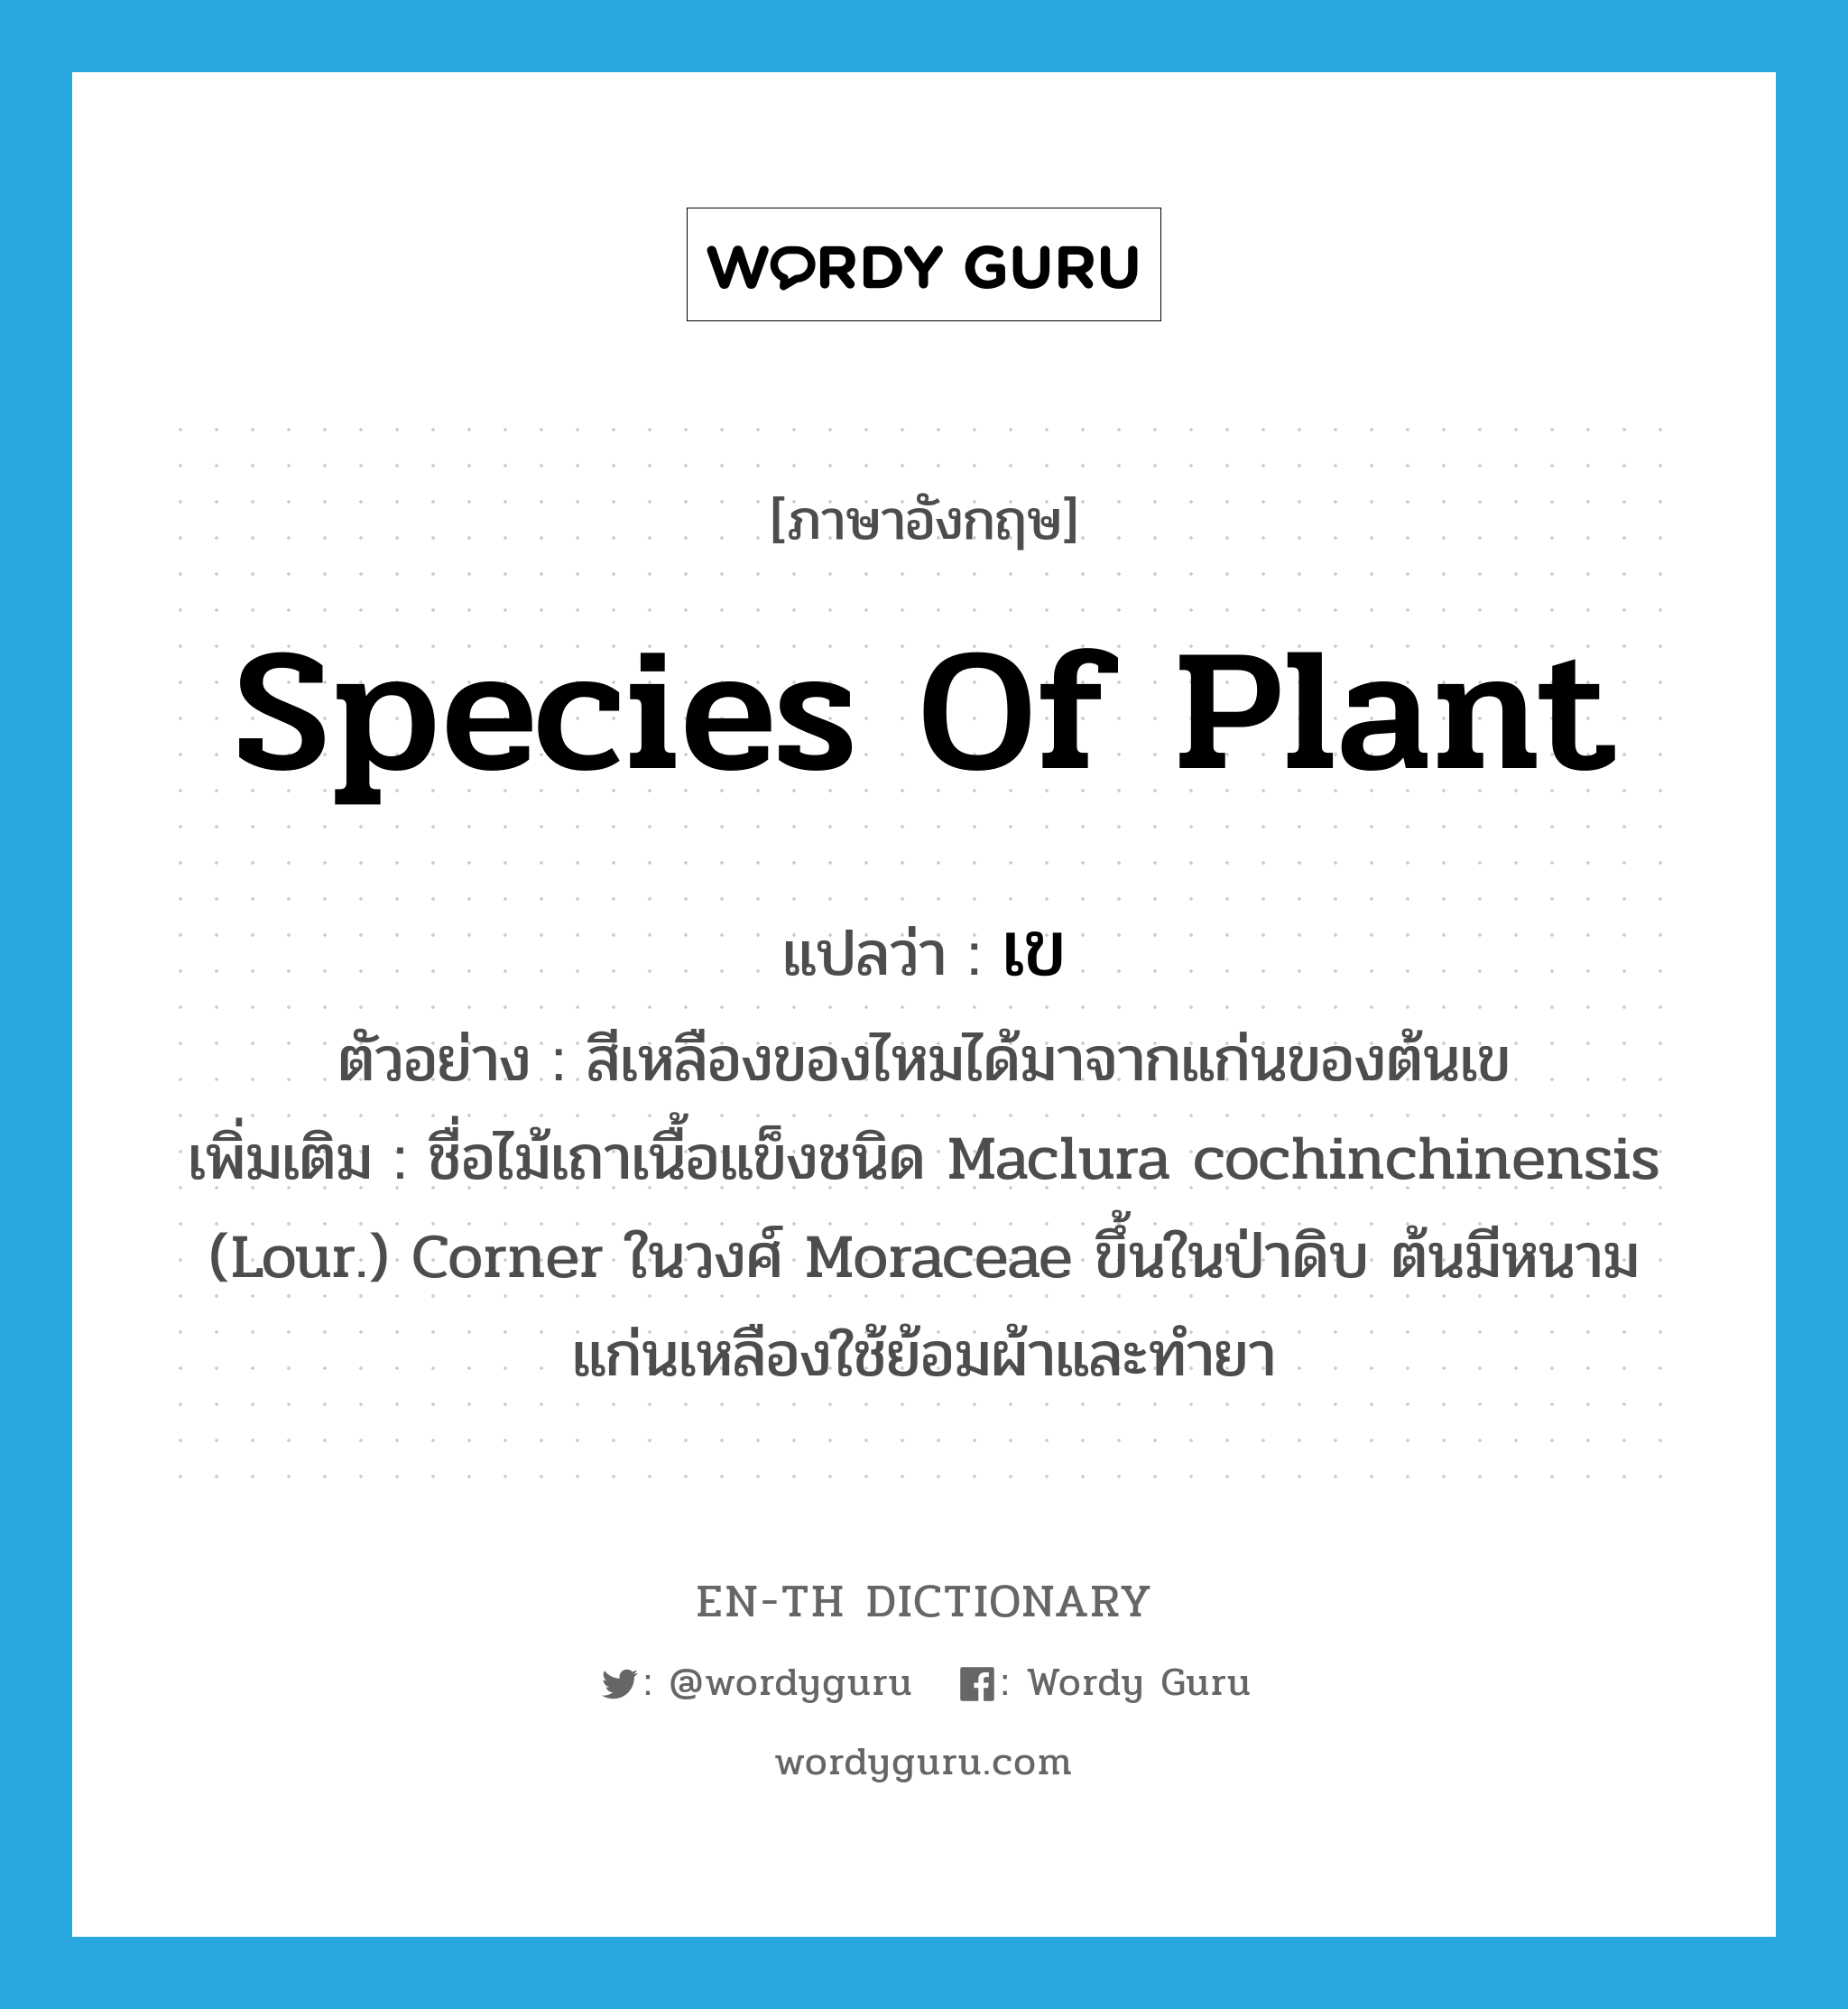 เข ภาษาอังกฤษ?, คำศัพท์ภาษาอังกฤษ เข แปลว่า species of plant ประเภท N ตัวอย่าง สีเหลืองของไหมได้มาจากแก่นของต้นเข เพิ่มเติม ชื่อไม้เถาเนื้อแข็งชนิด Maclura cochinchinensis (Lour.) Corner ในวงศ์ Moraceae ขึ้นในป่าดิบ ต้นมีหนาม แก่นเหลืองใช้ย้อมผ้าและทำยา หมวด N